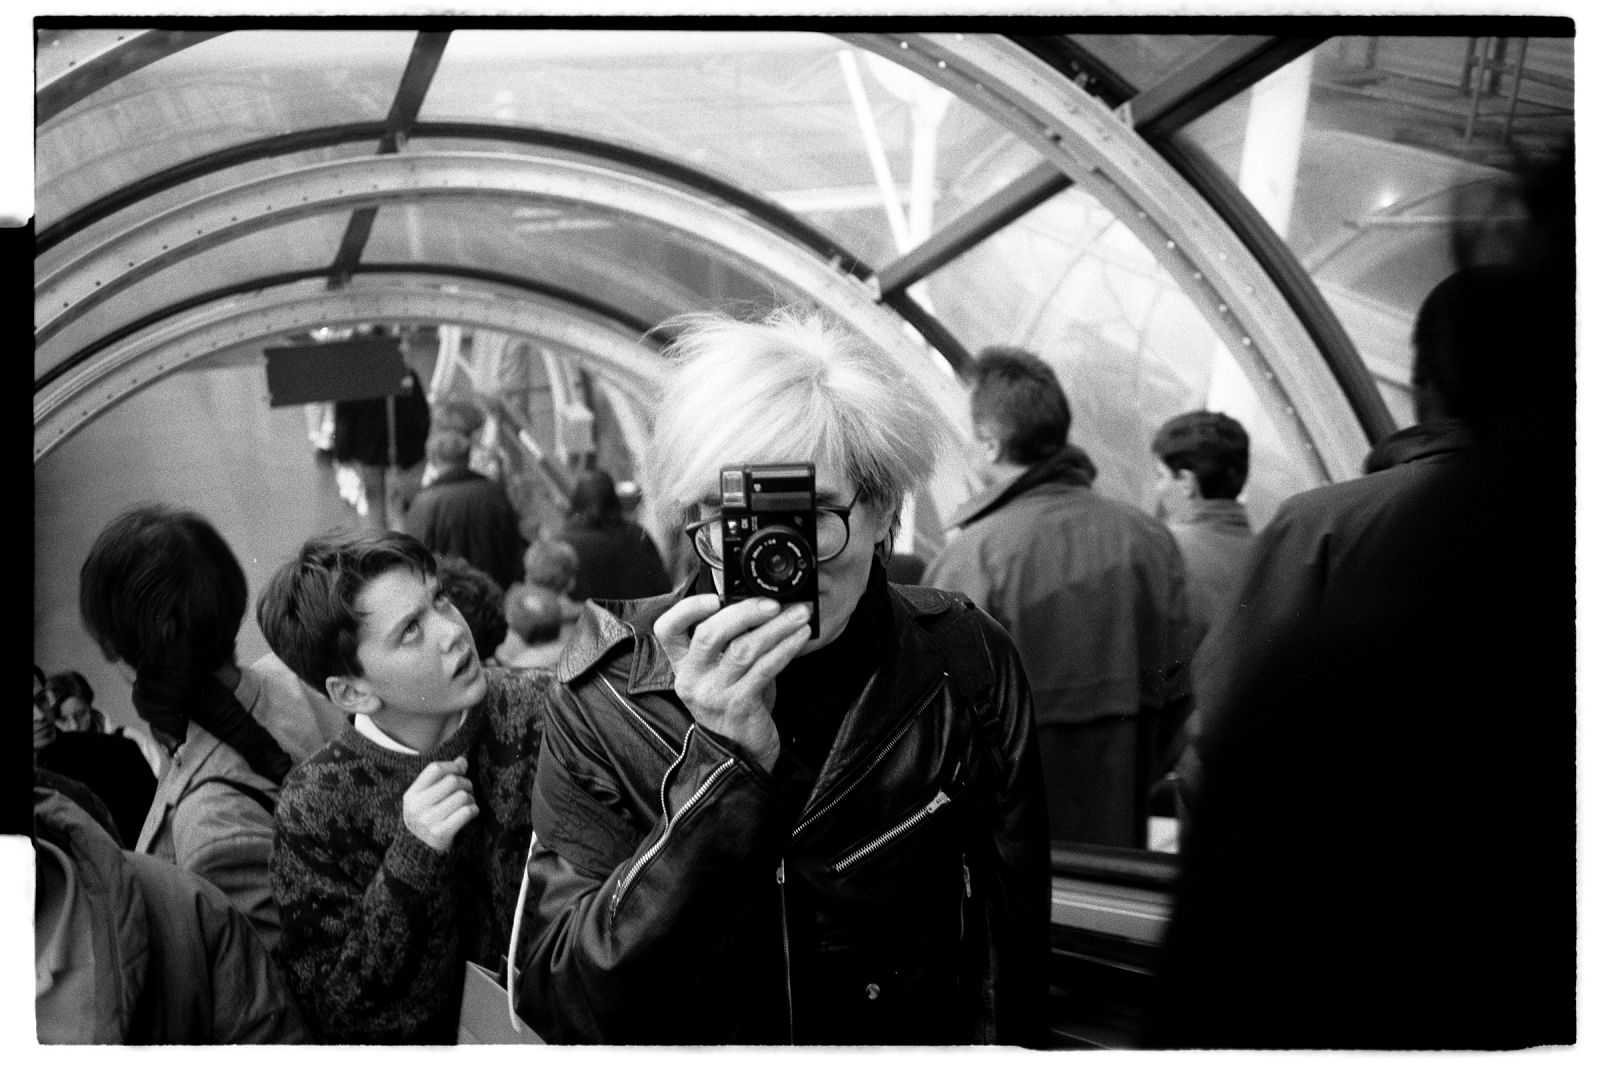 Andy Warhol ha sido uno de los artistas más influyentes del siglo XX